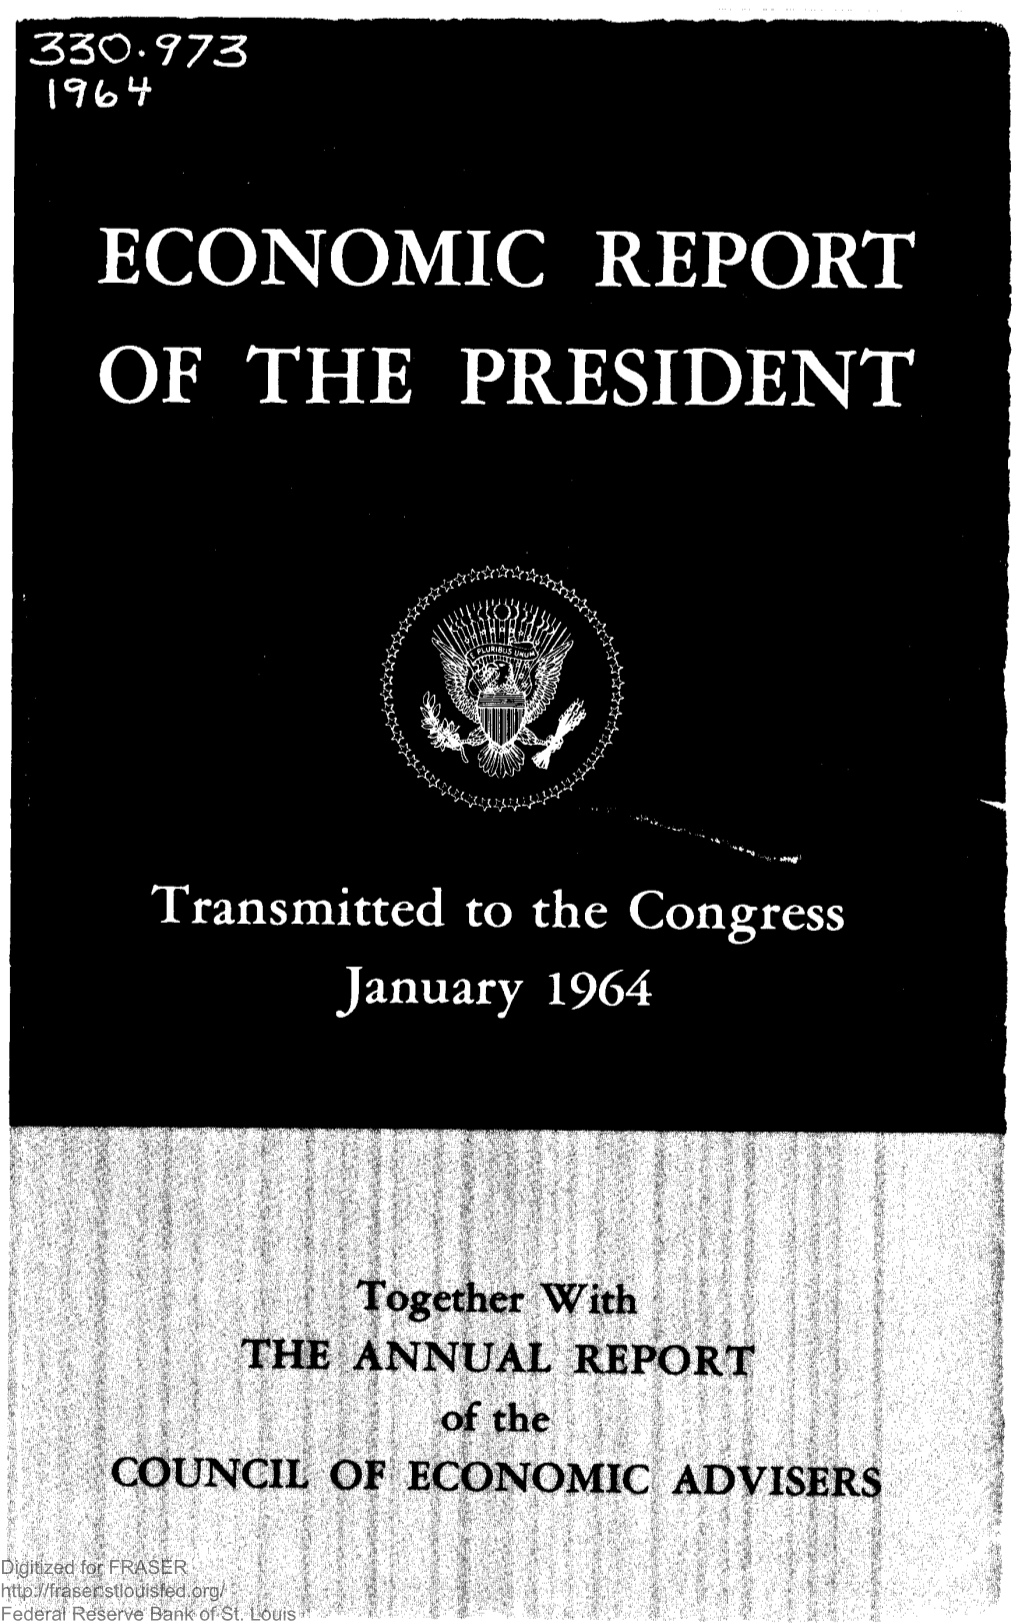 Economic Report of the President 1964